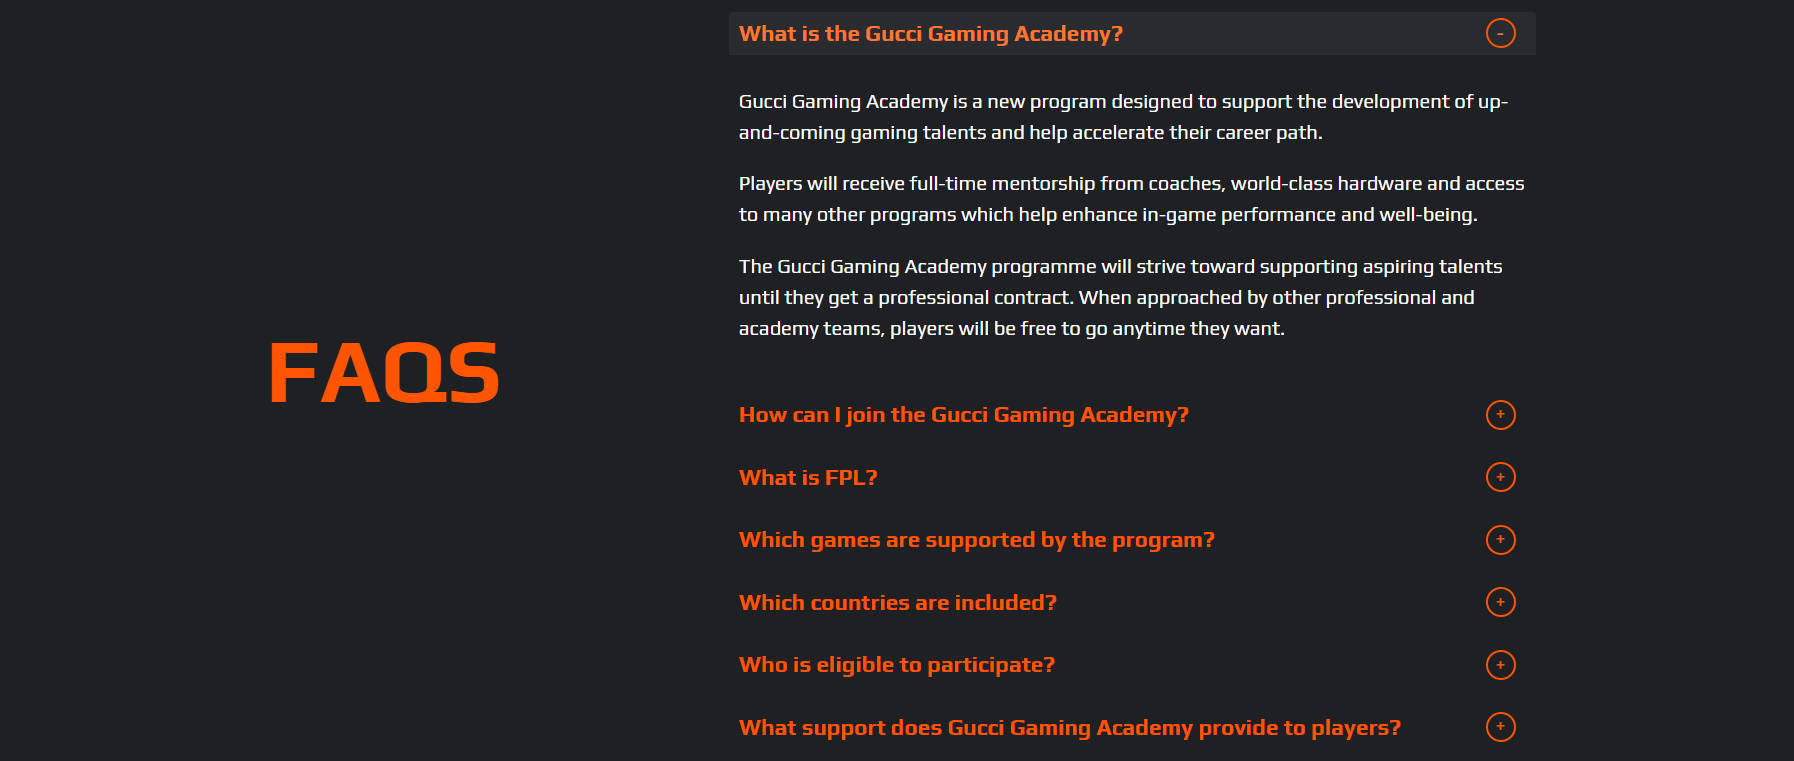 グッチ・ゲーミング・アカデミーとは何ですか？_b0007805_03030319.jpg